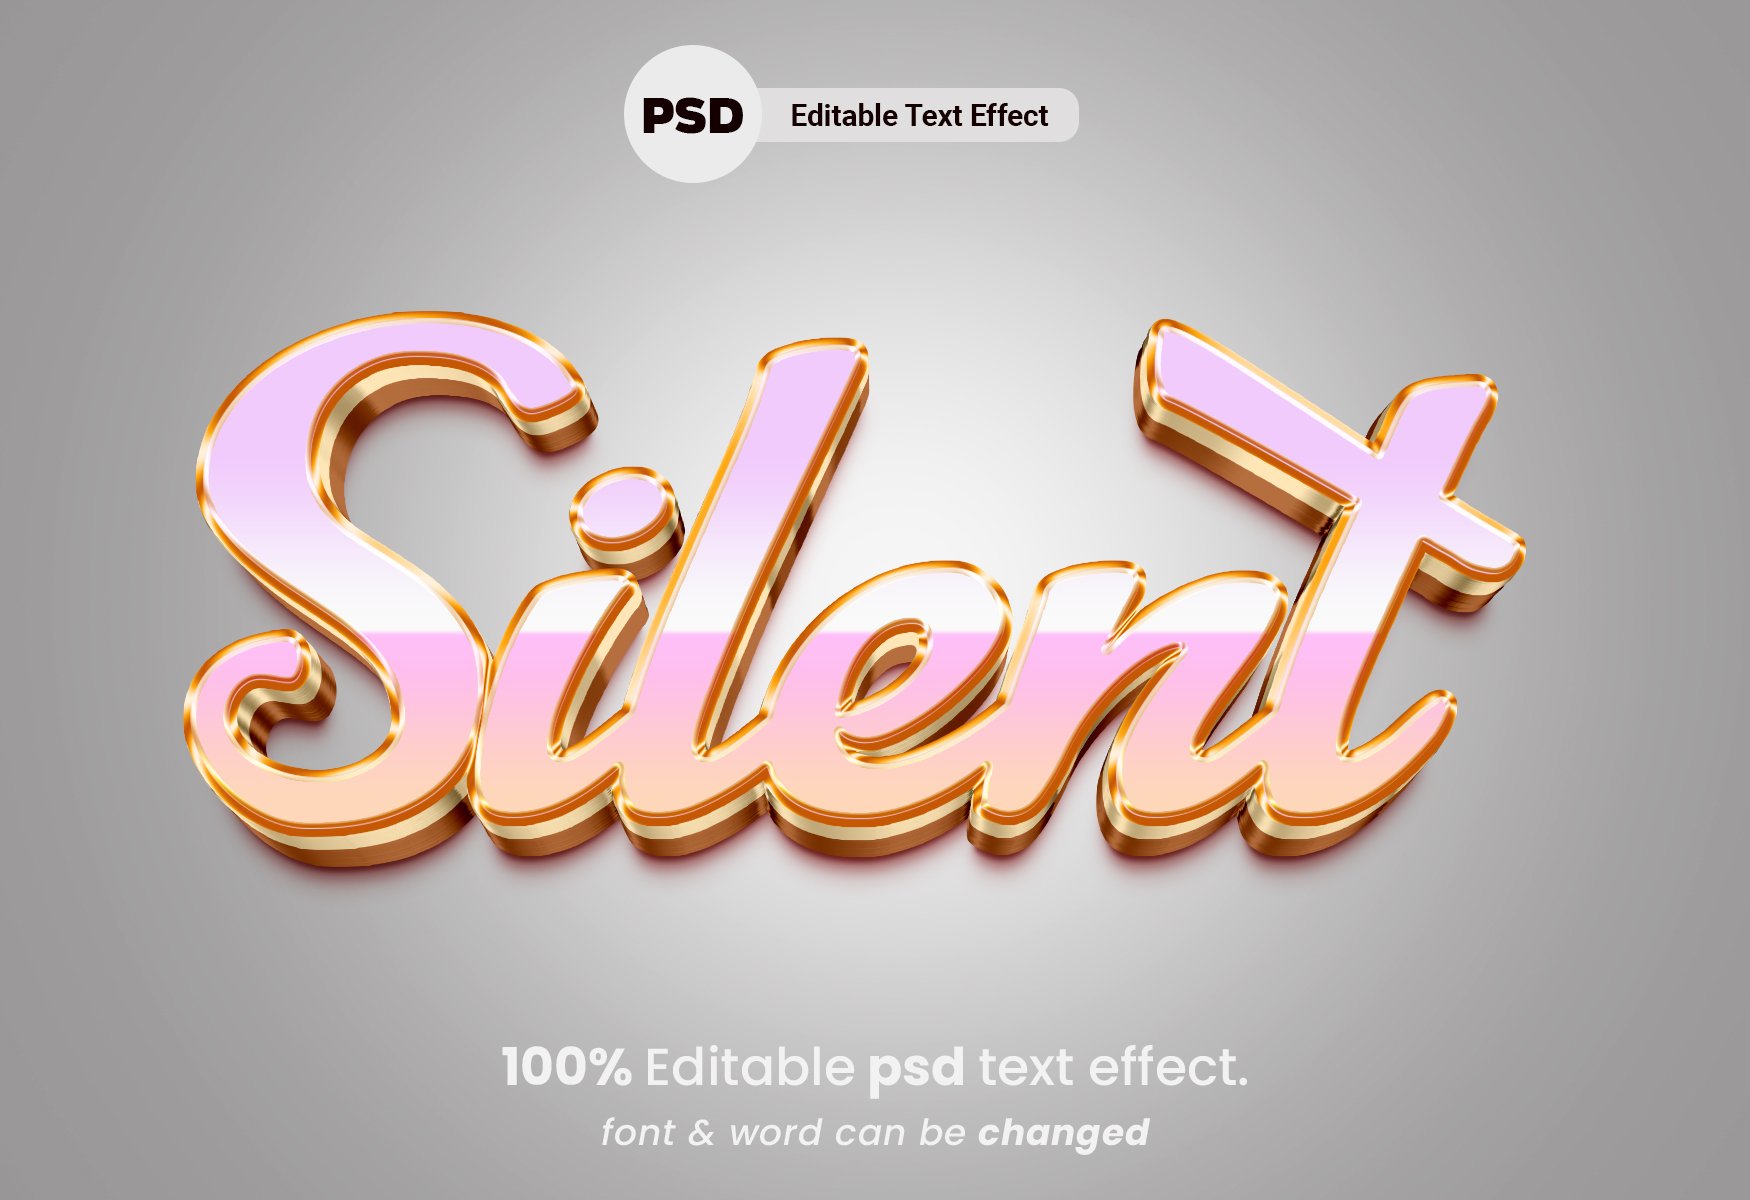 PSD текст. Text Effect PSD. 3d text PSD. Barbie text Effect PSD.